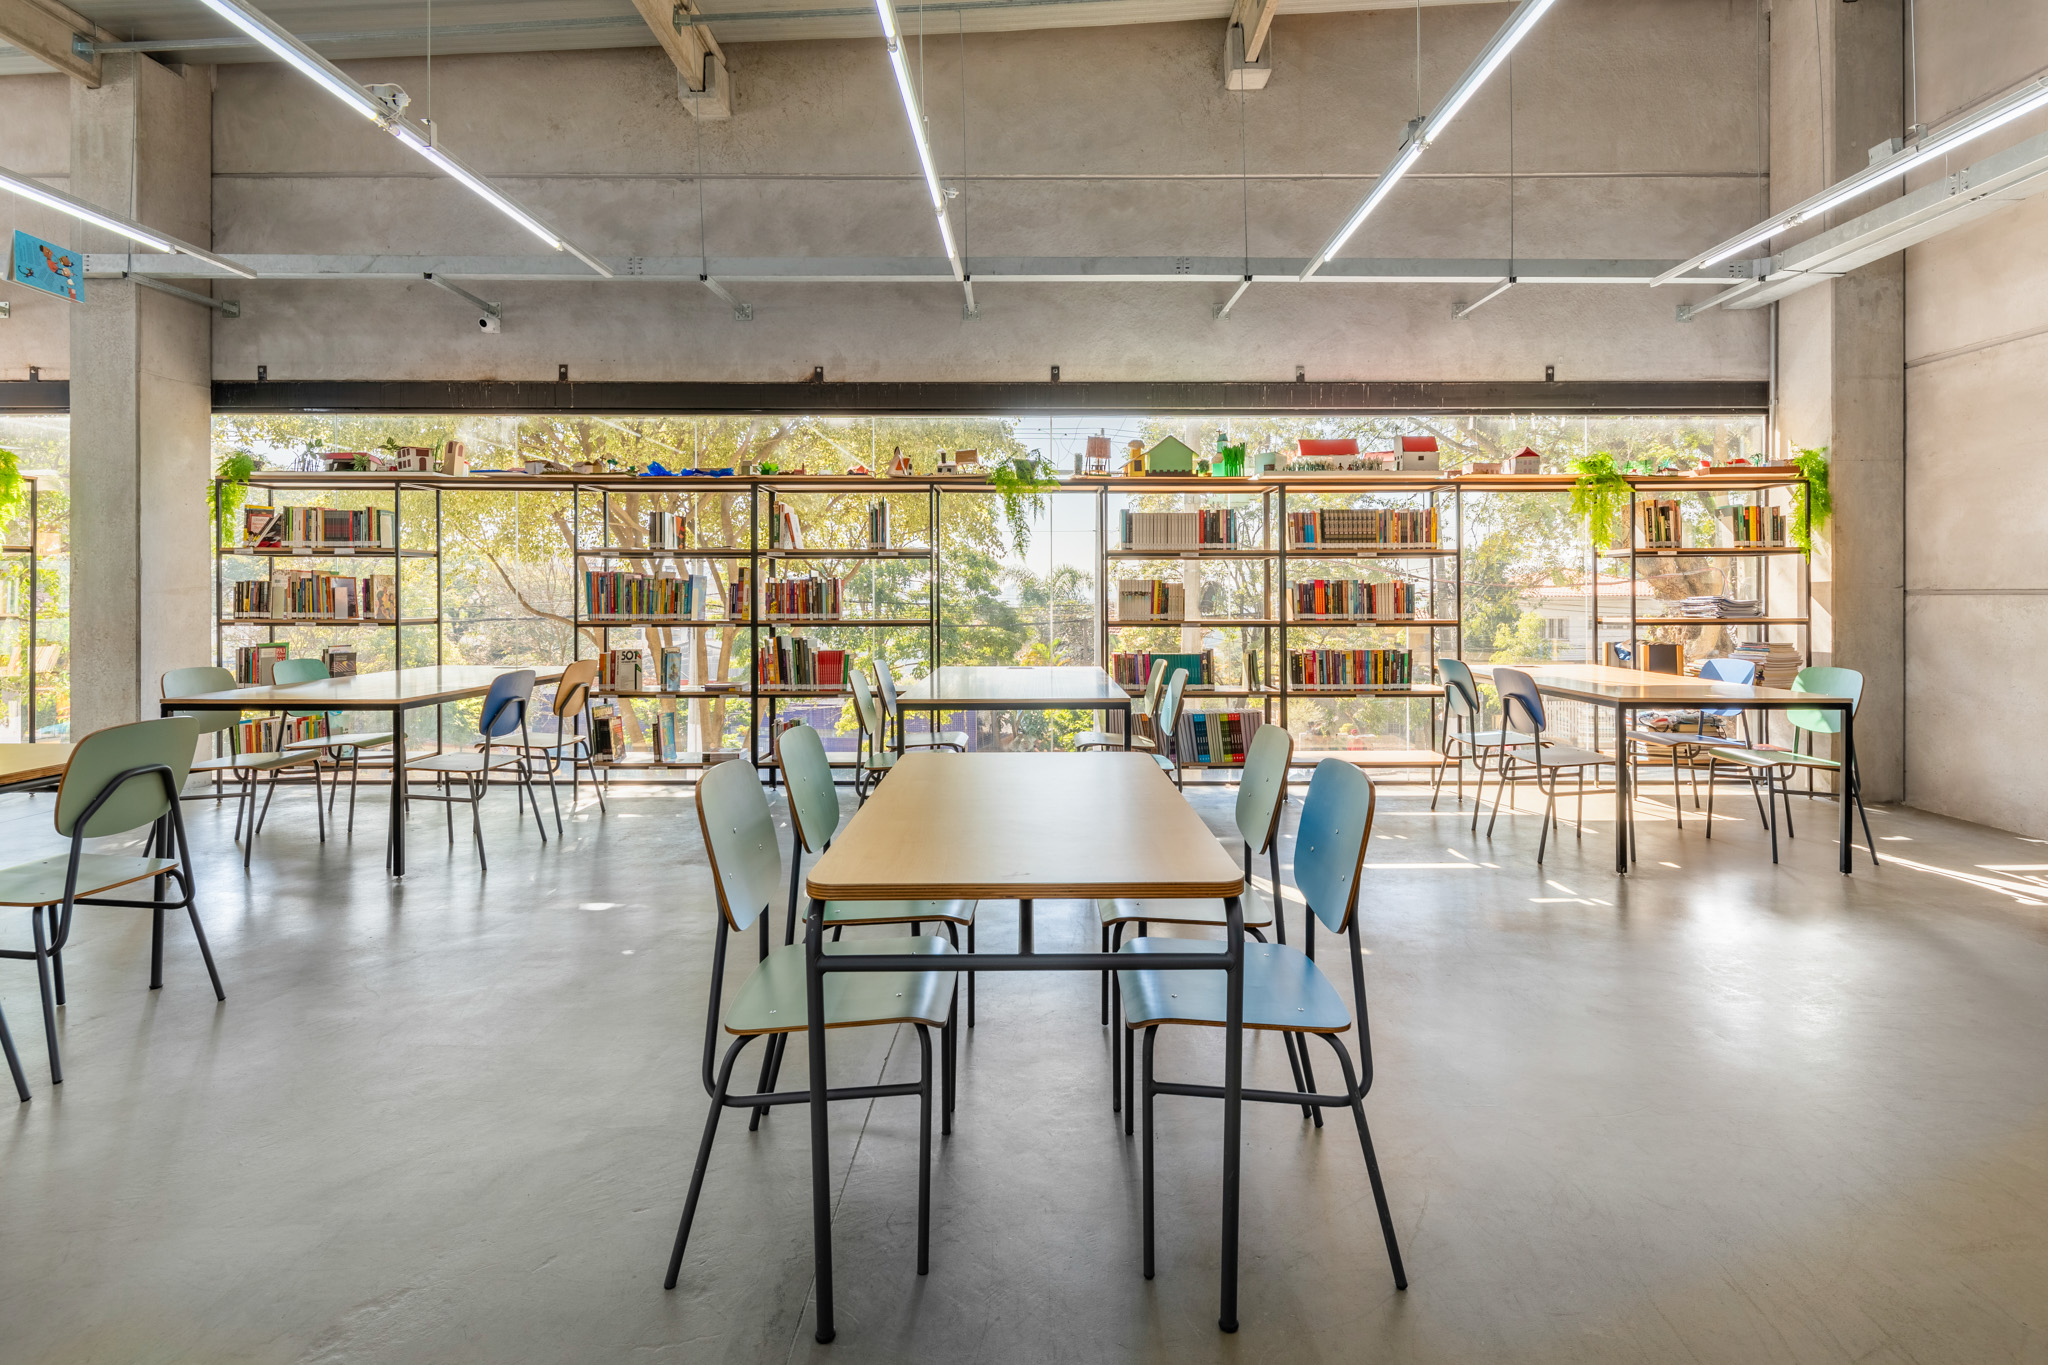 Sala de leitura ampla e bem iluminada, com grandes janelas, mesas retangulares, cadeiras coloridas e estantes de livros vazadas.